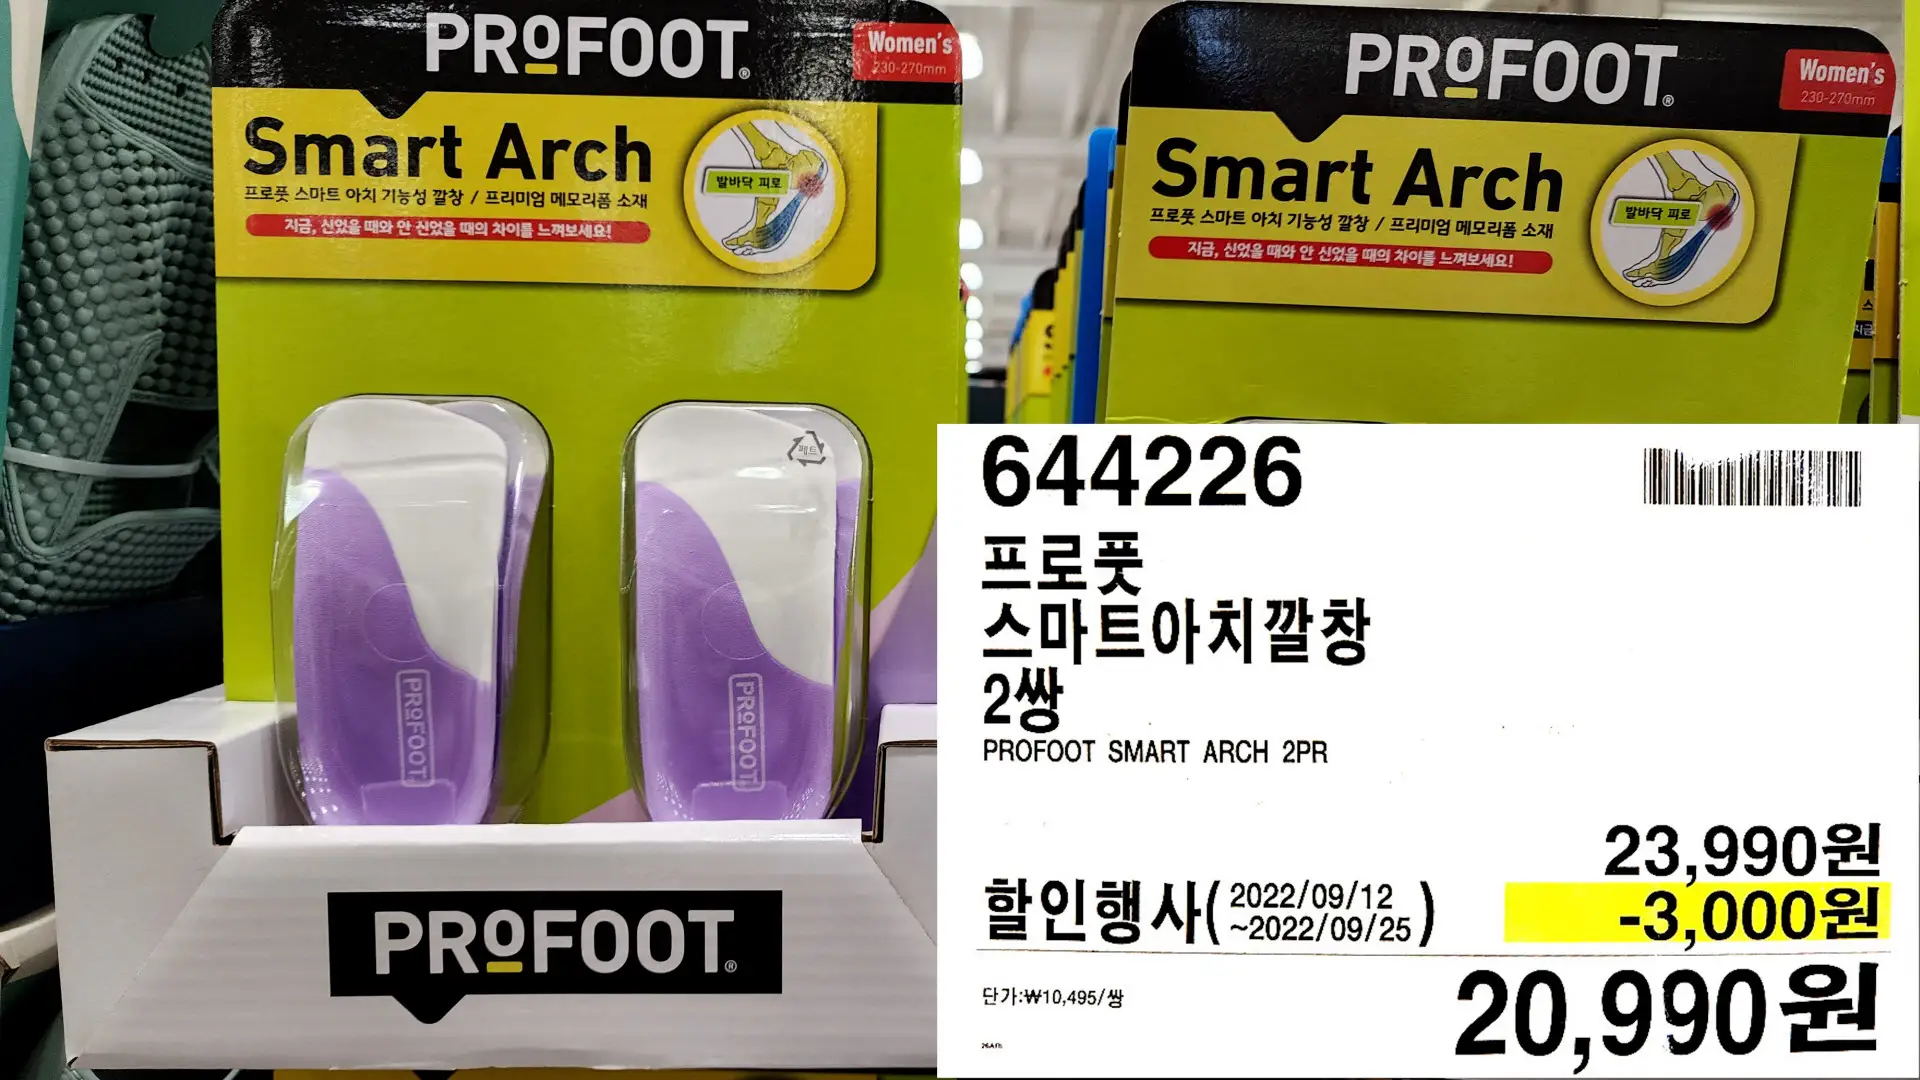 프로풋
스마트아치깔창
2쌍
PROFOOT SMART ARCH 2PR
20&#44;990원